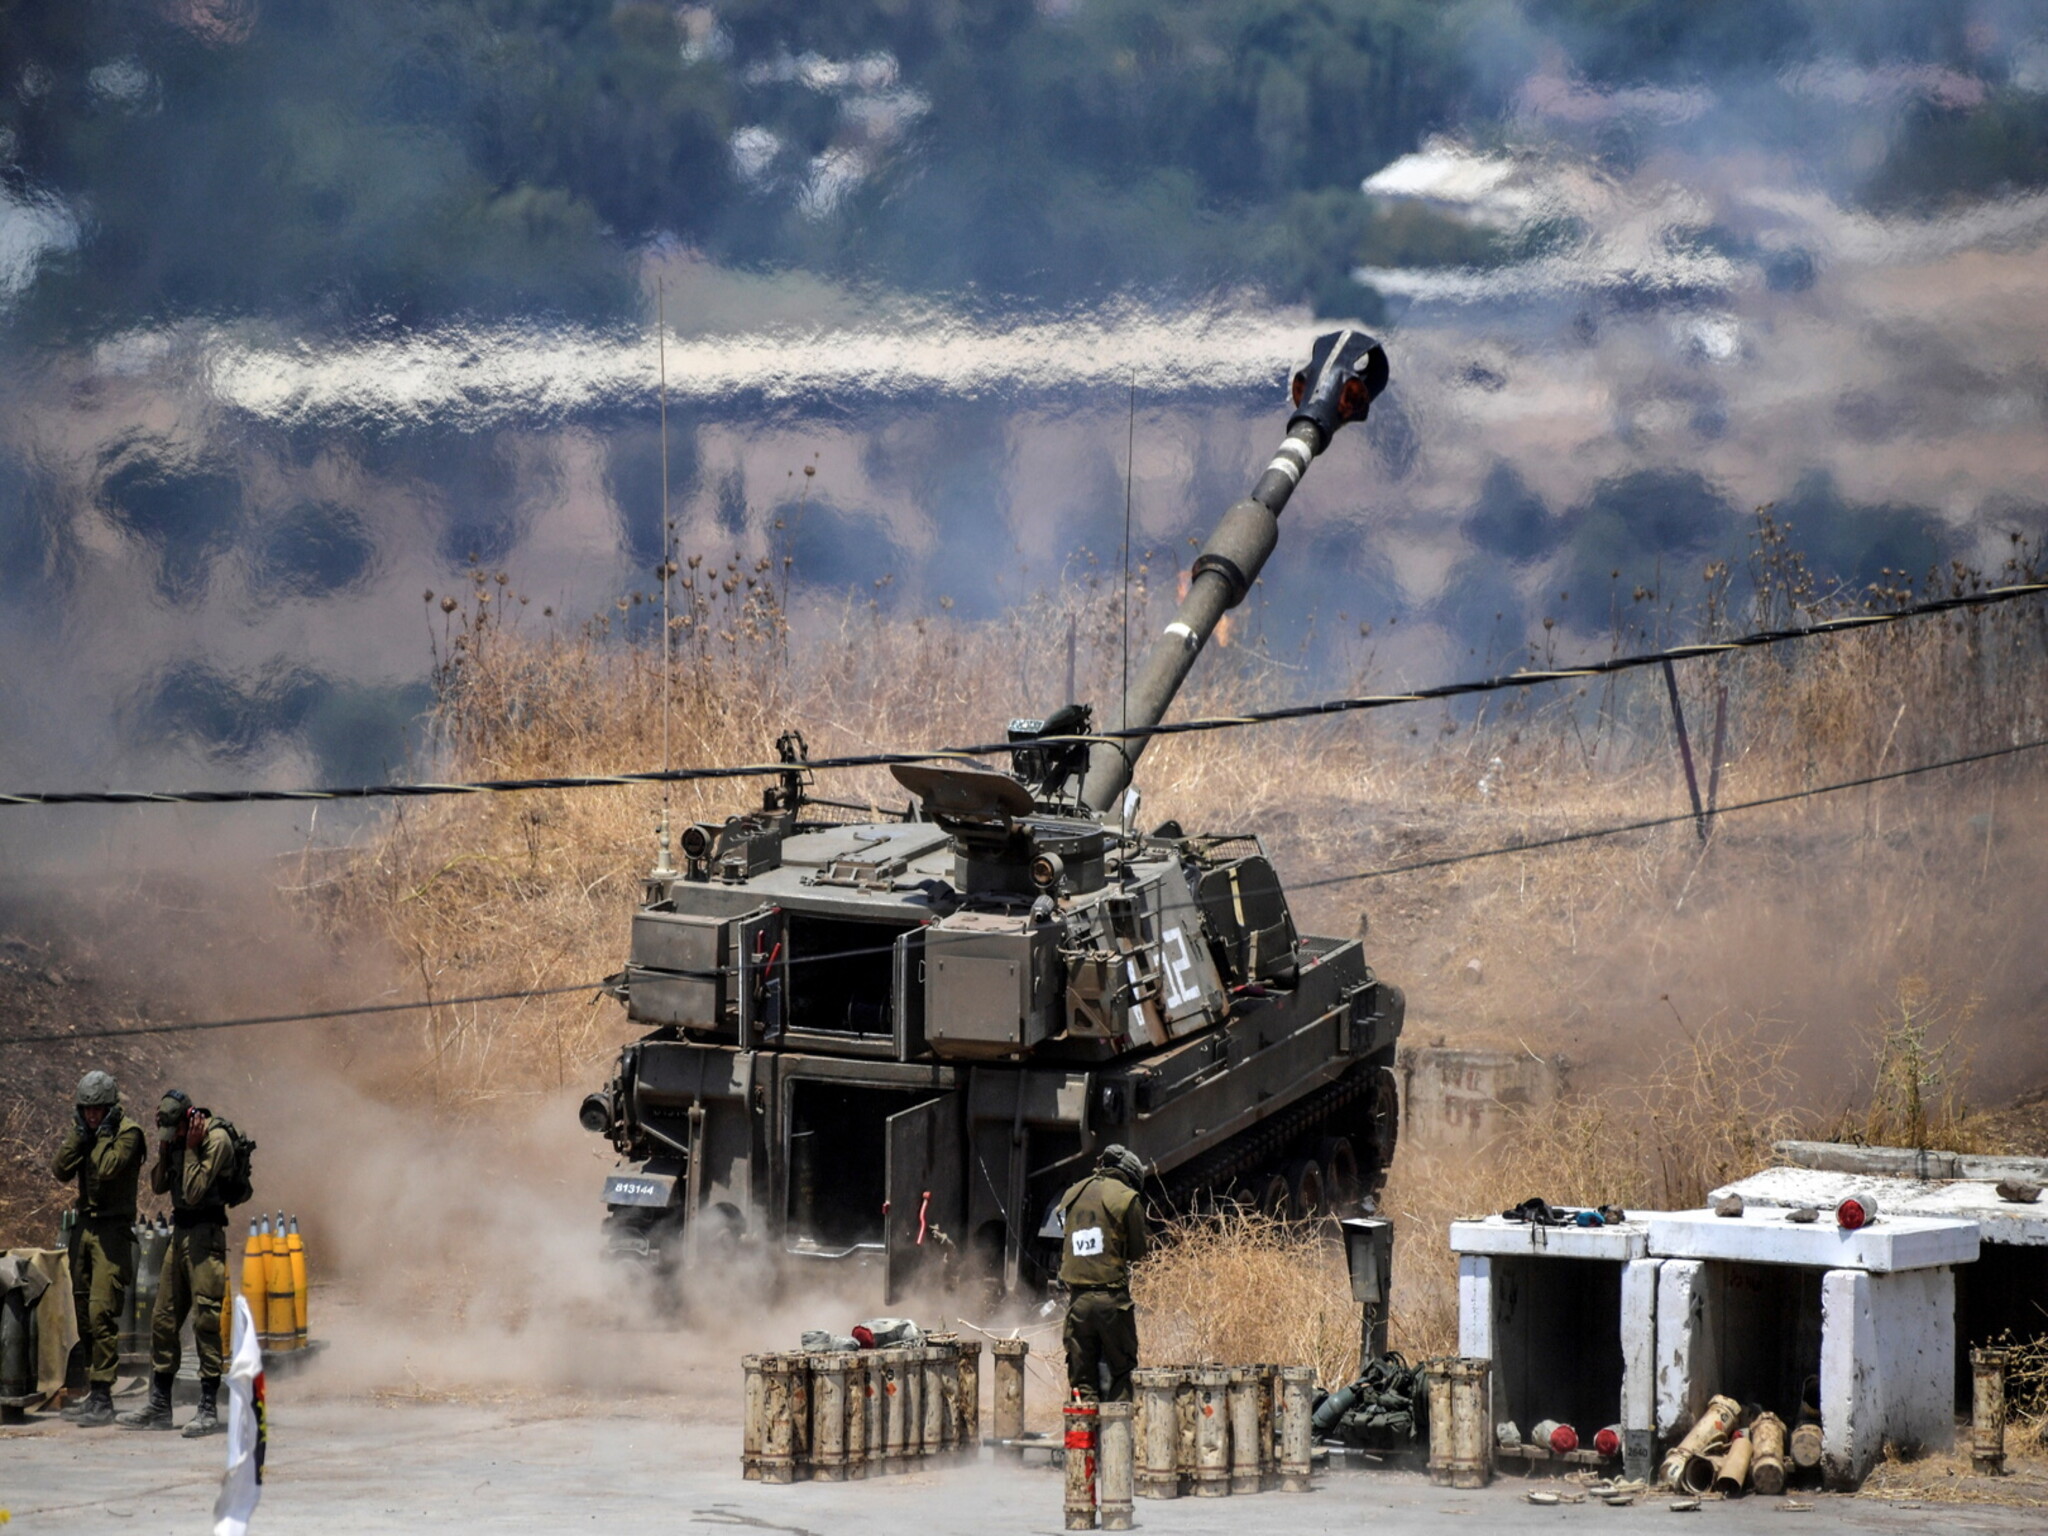 الجيش الإسرائيلي...يتهم "حزب الله" بدفع لبنان إلى حرب